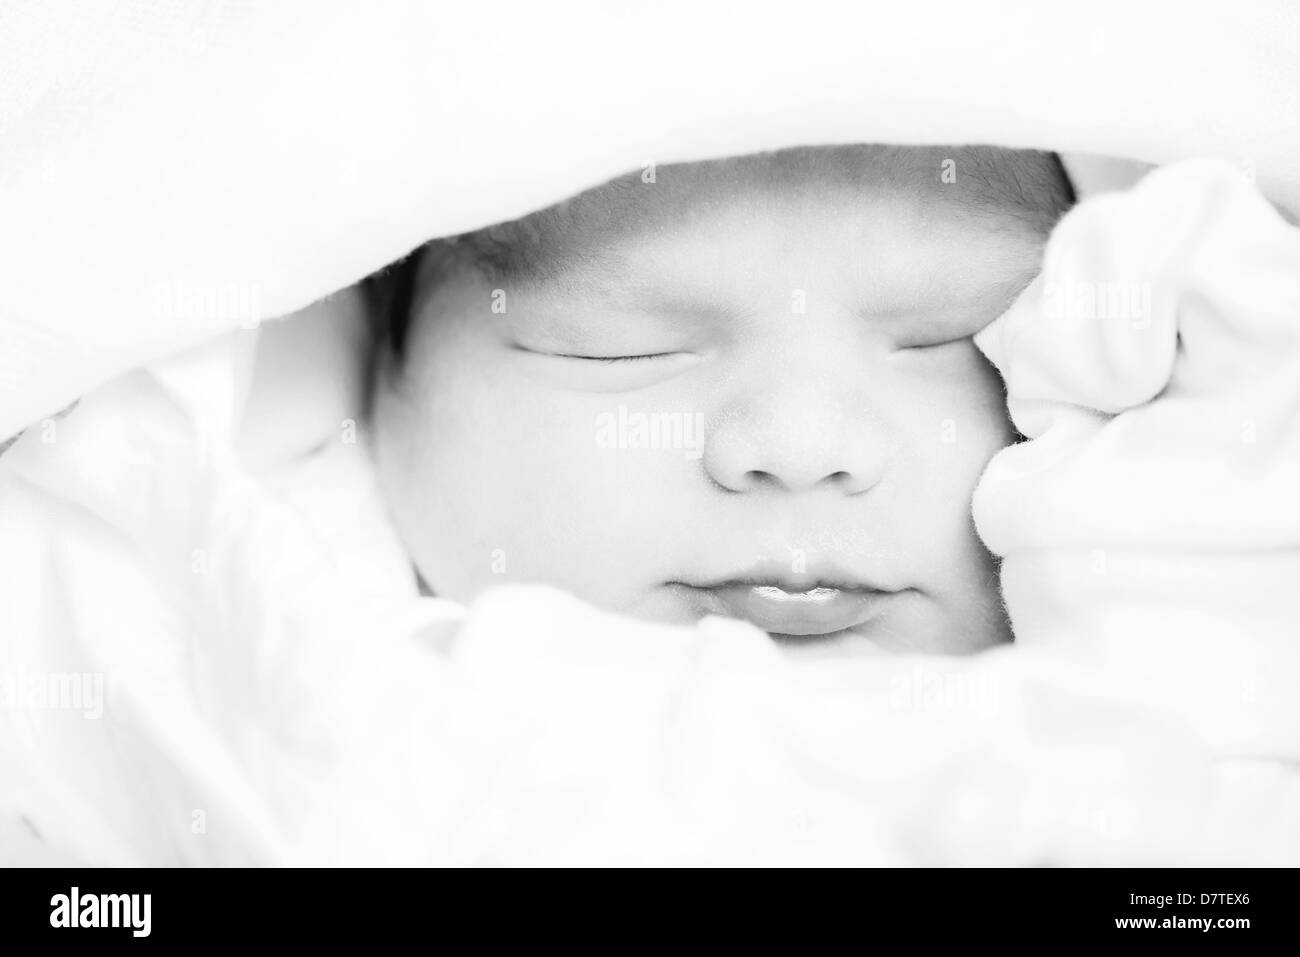 beautiful newborn baby sleeping, black and white image Stock Photo